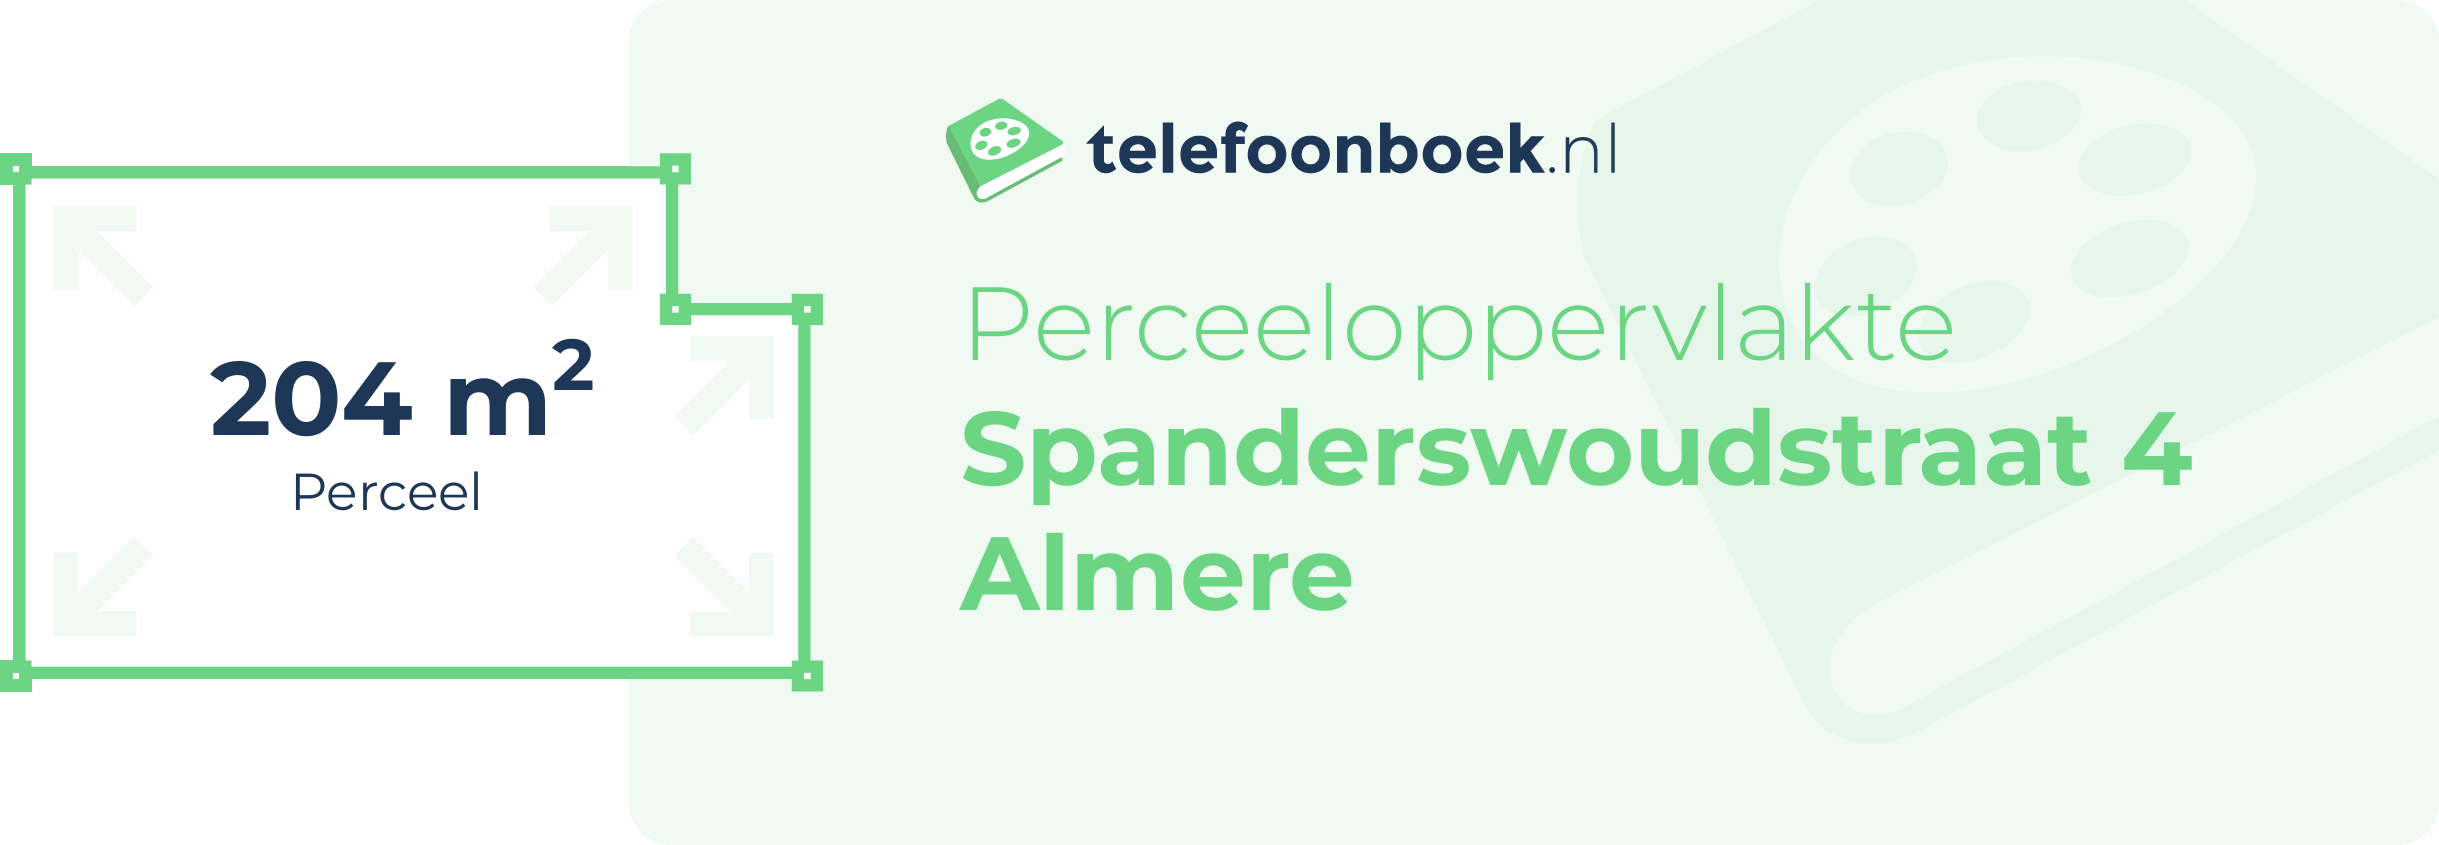 Perceeloppervlakte Spanderswoudstraat 4 Almere